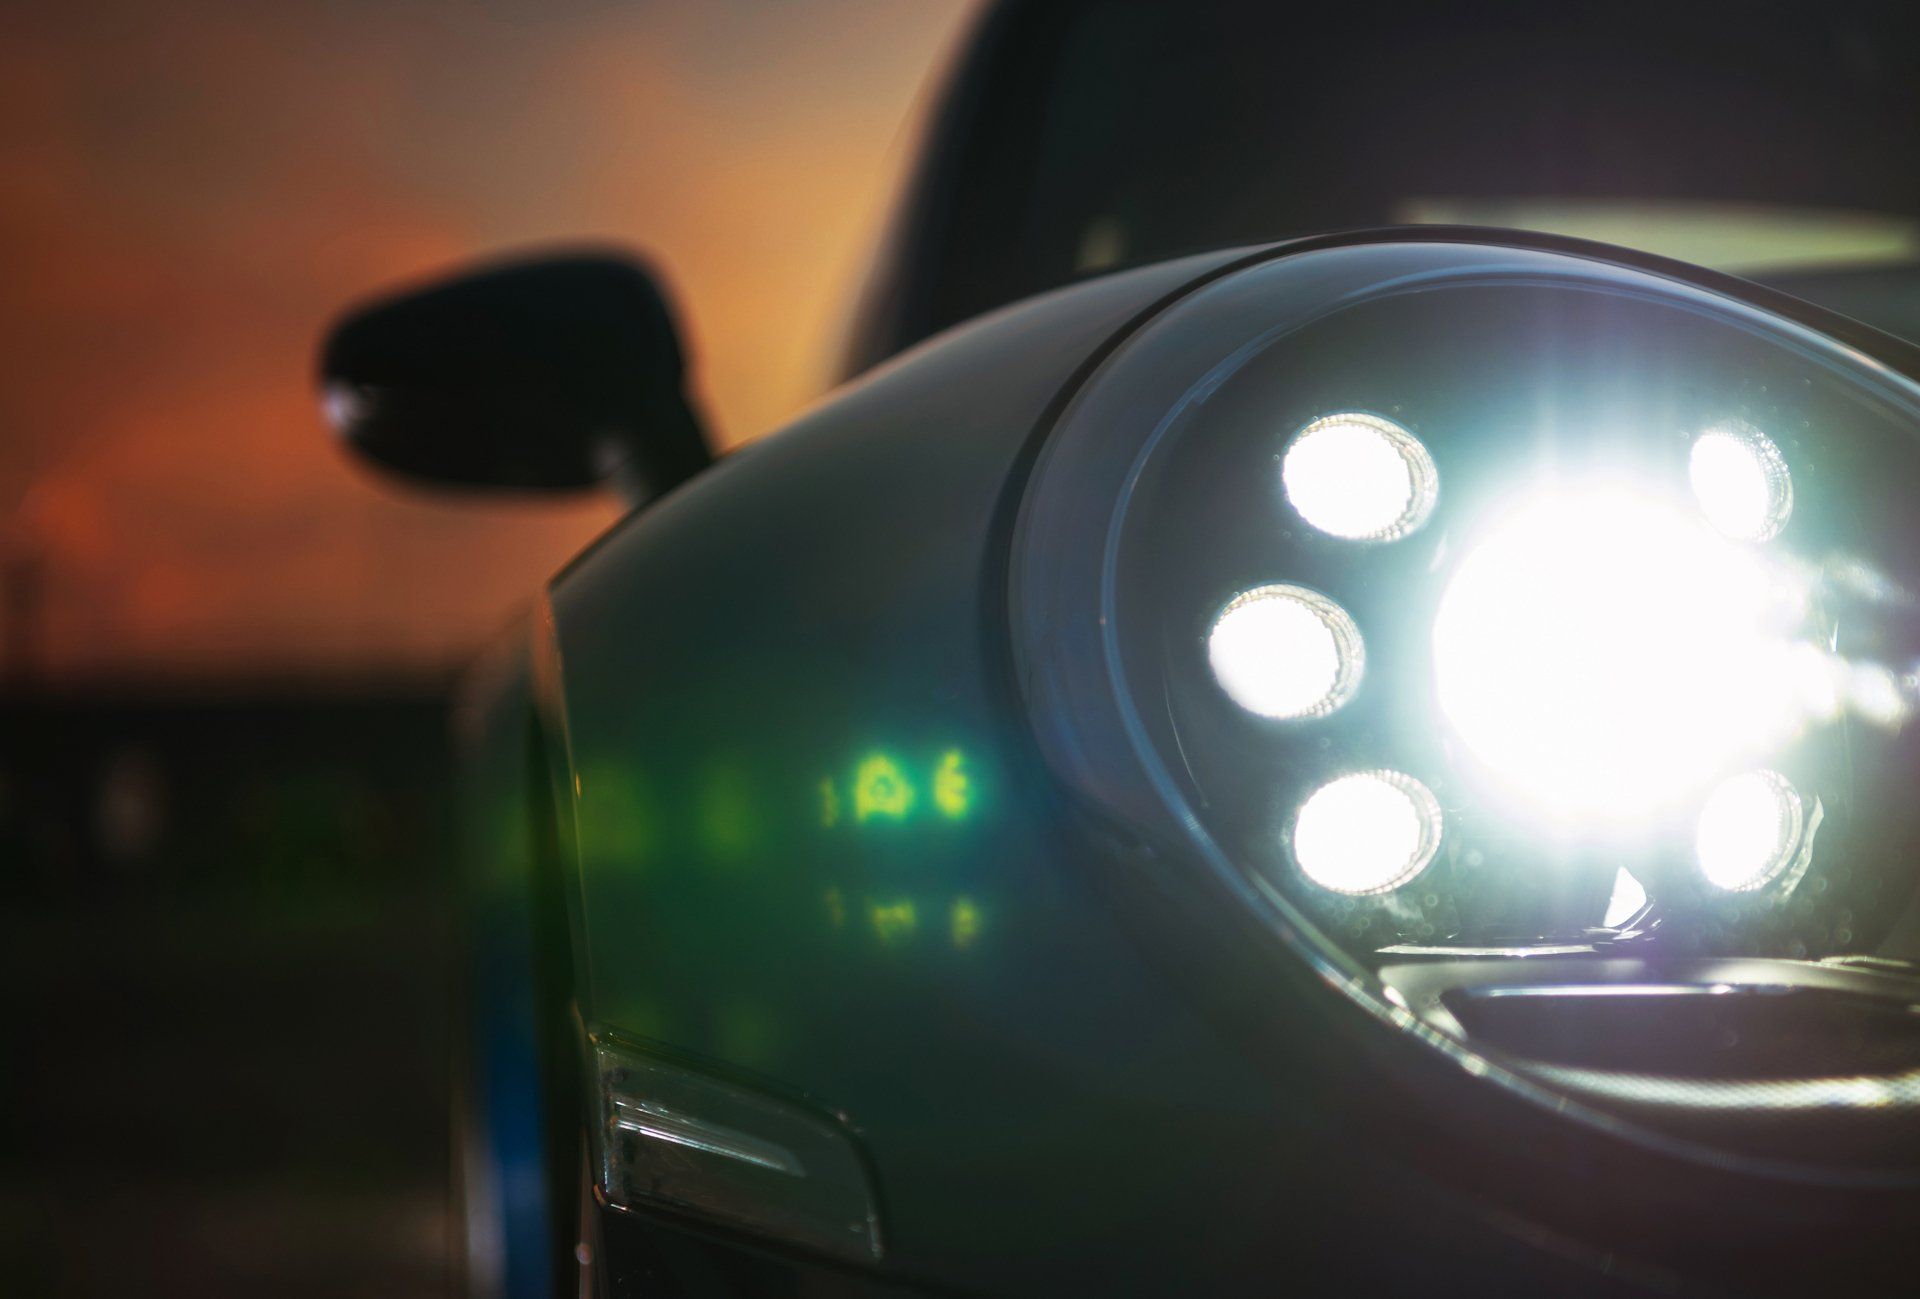 Car LED Lighting